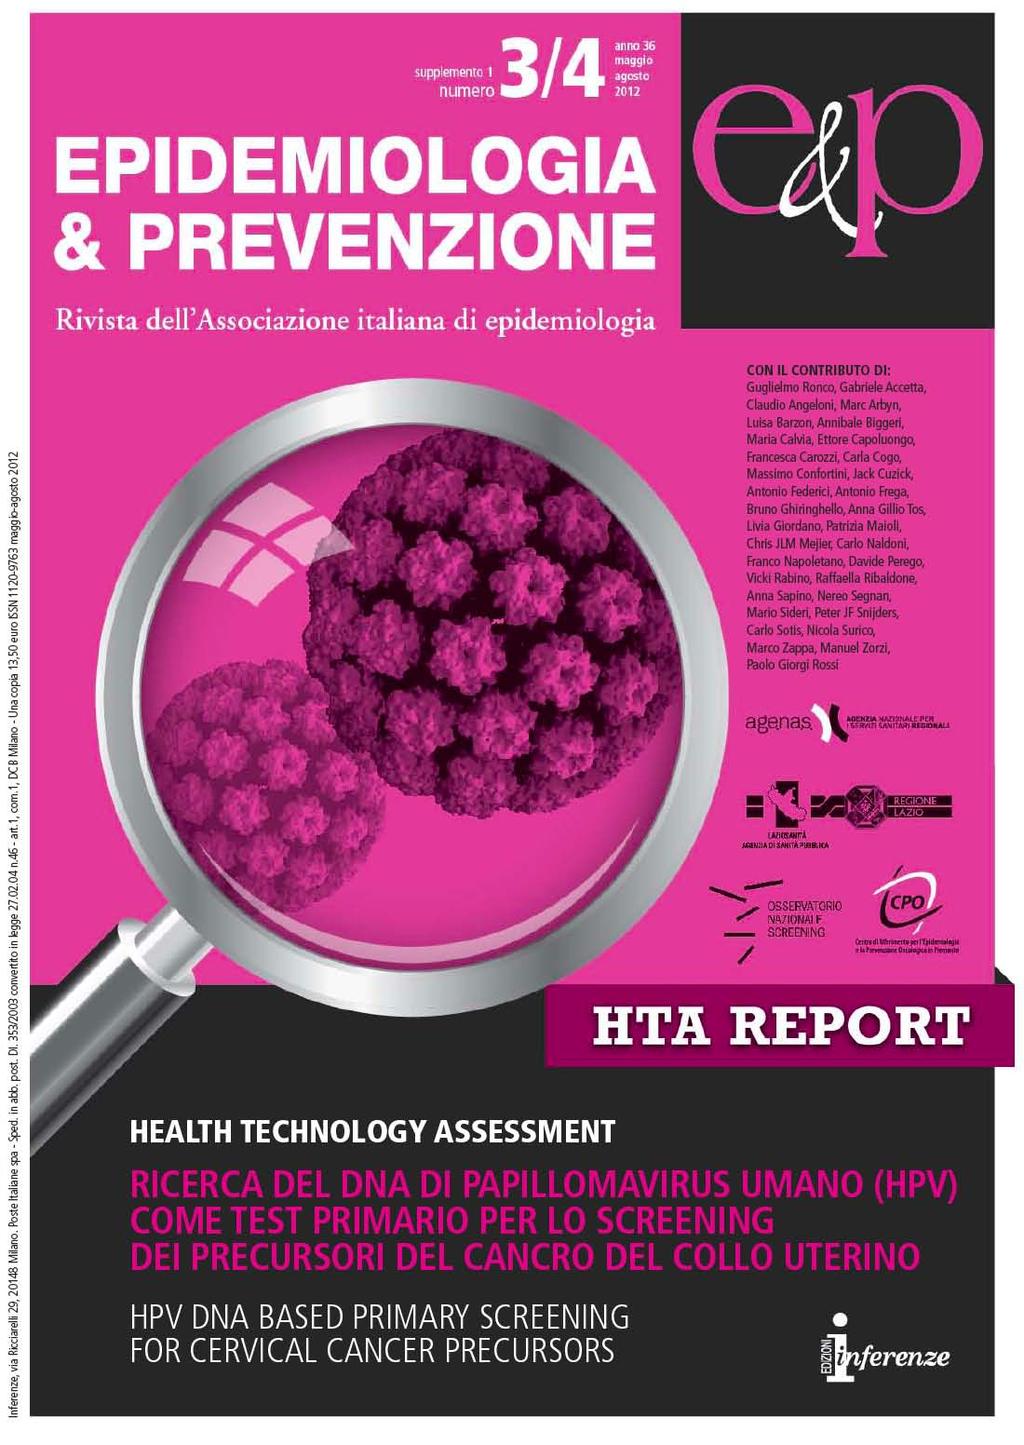 HTA report italiano: Luglio 2012.